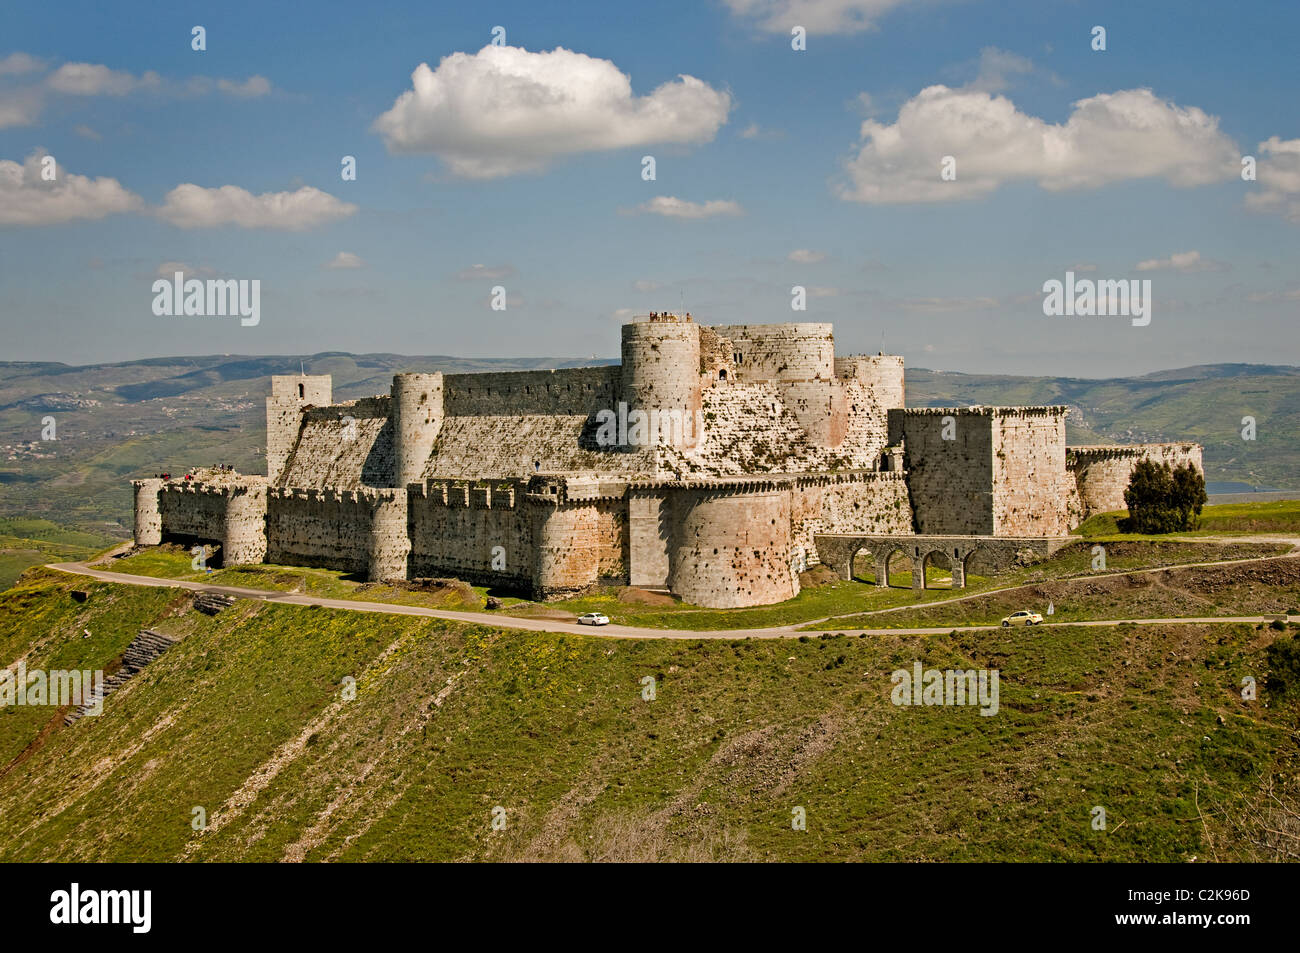 La siria Crac Krak des Chevaliers castello medievale dei Cavalieri o Quala'at al-Hosn crociati nei pressi di Homs Foto Stock